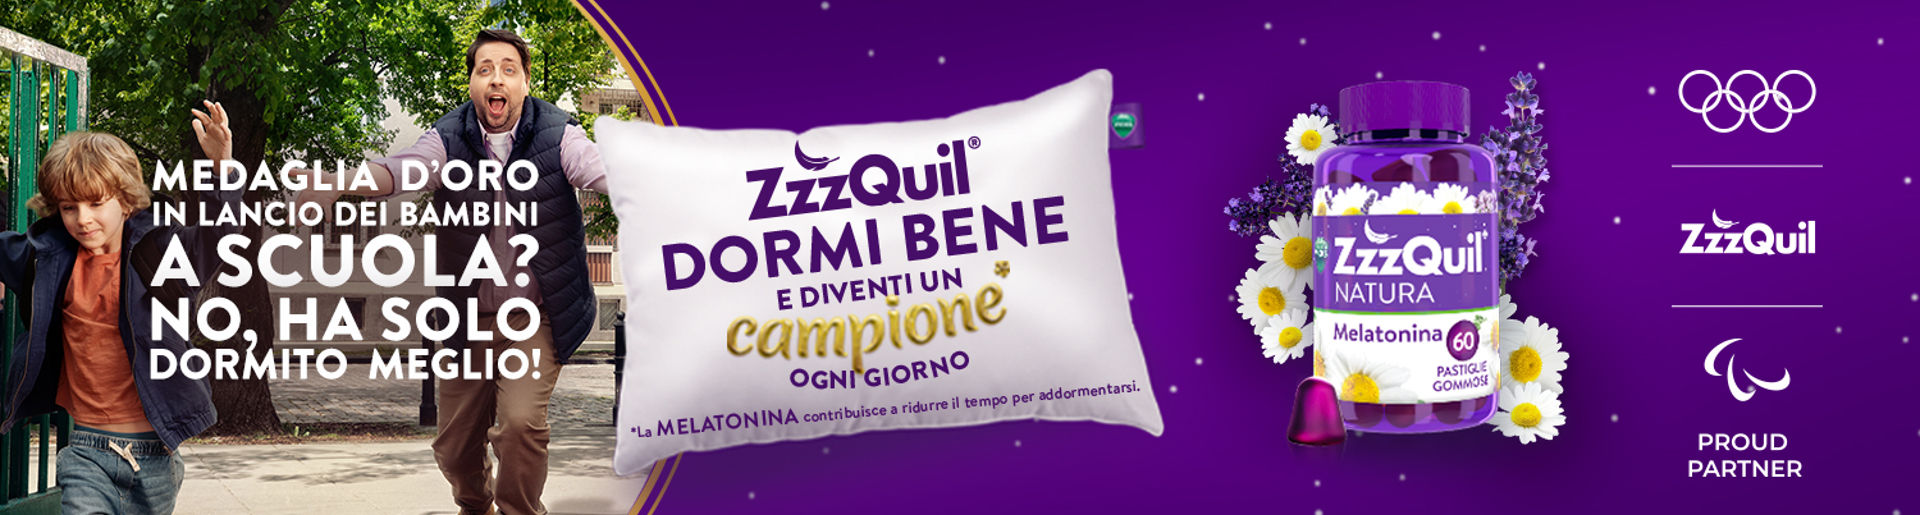 ZzzQuil dormire meglio - Farmacie Comunali Torino